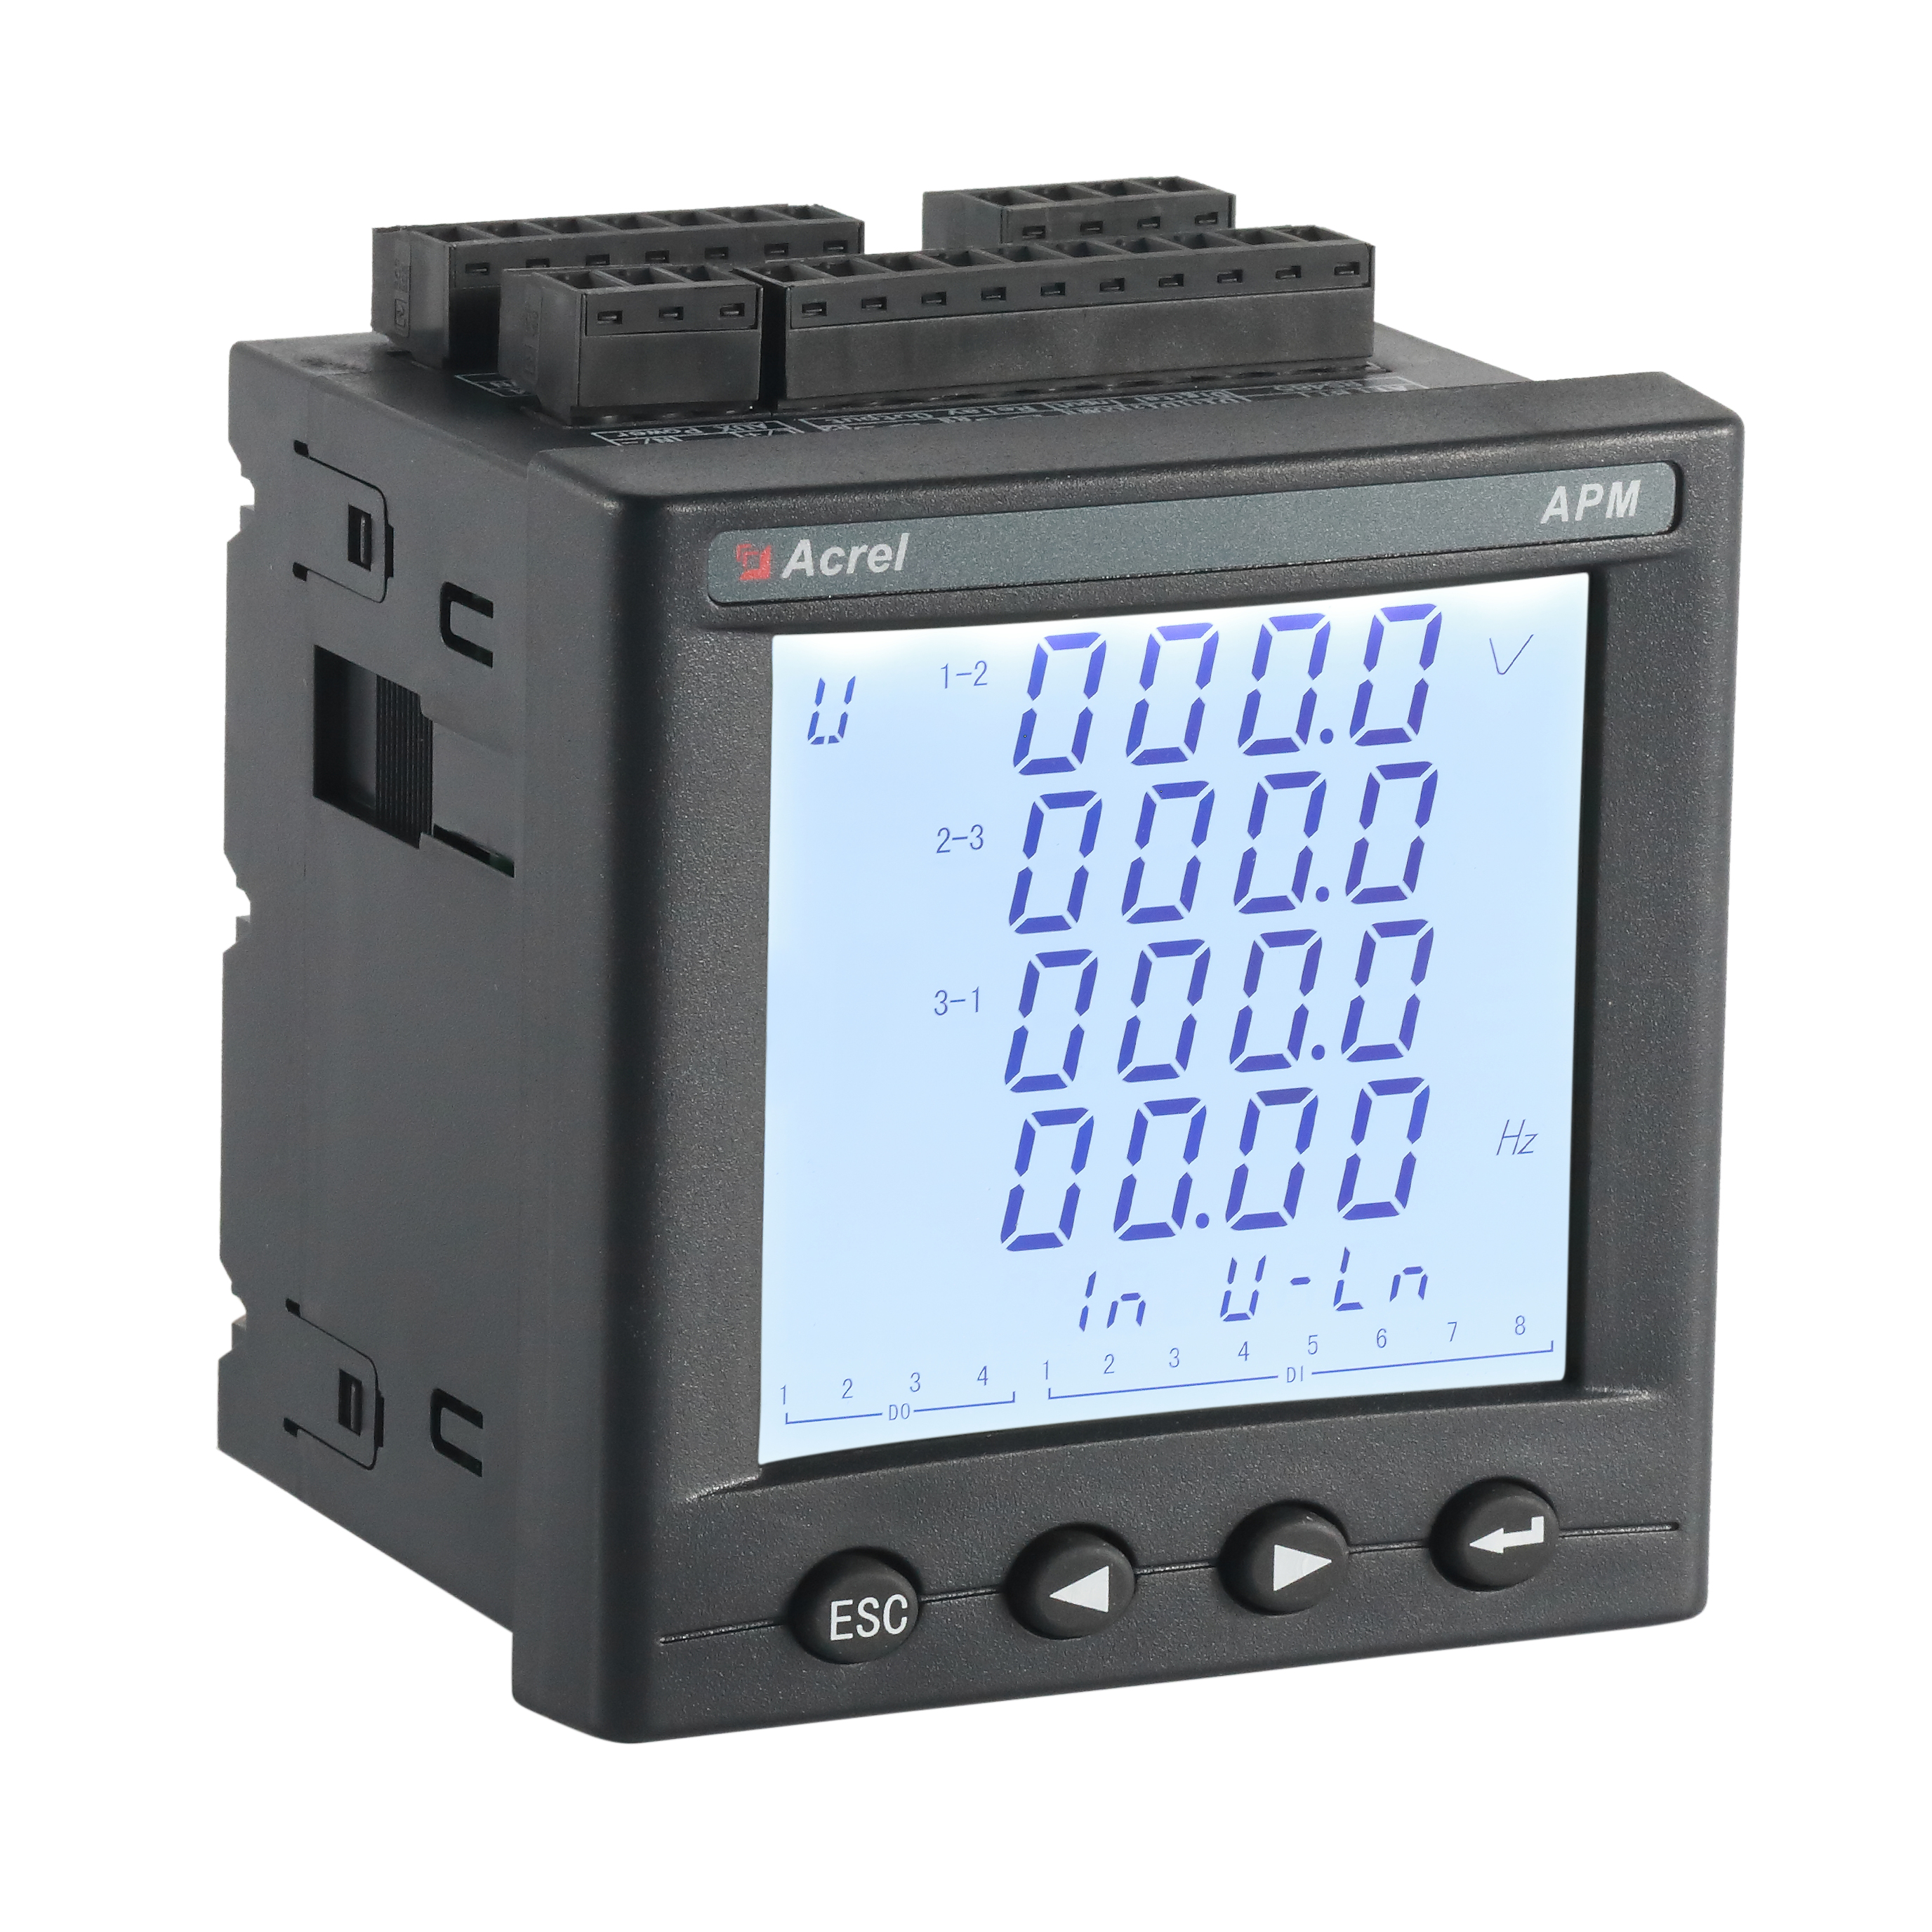 安科瑞精度高电能表APM800 可带SD卡记录数据